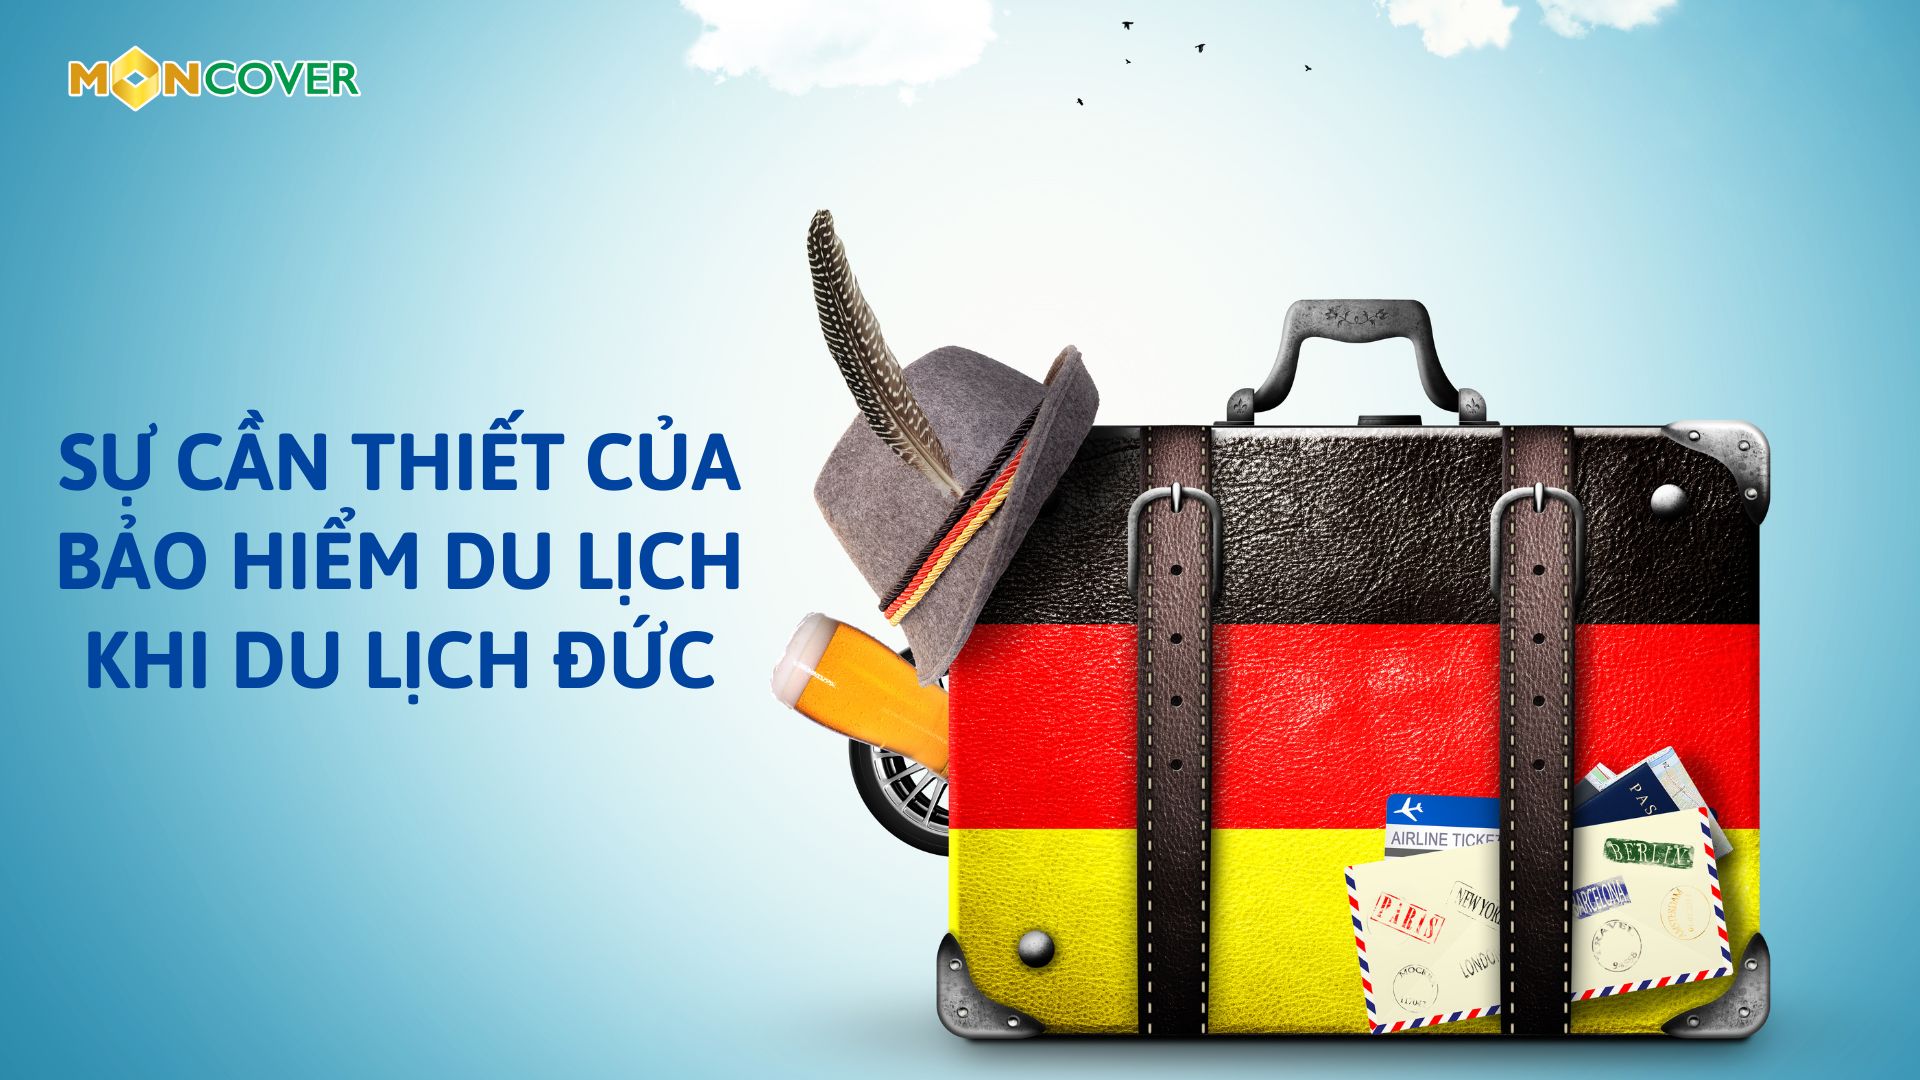 Sự cần thiết của bảo hiểm du lịch khi đi du lịch Đức